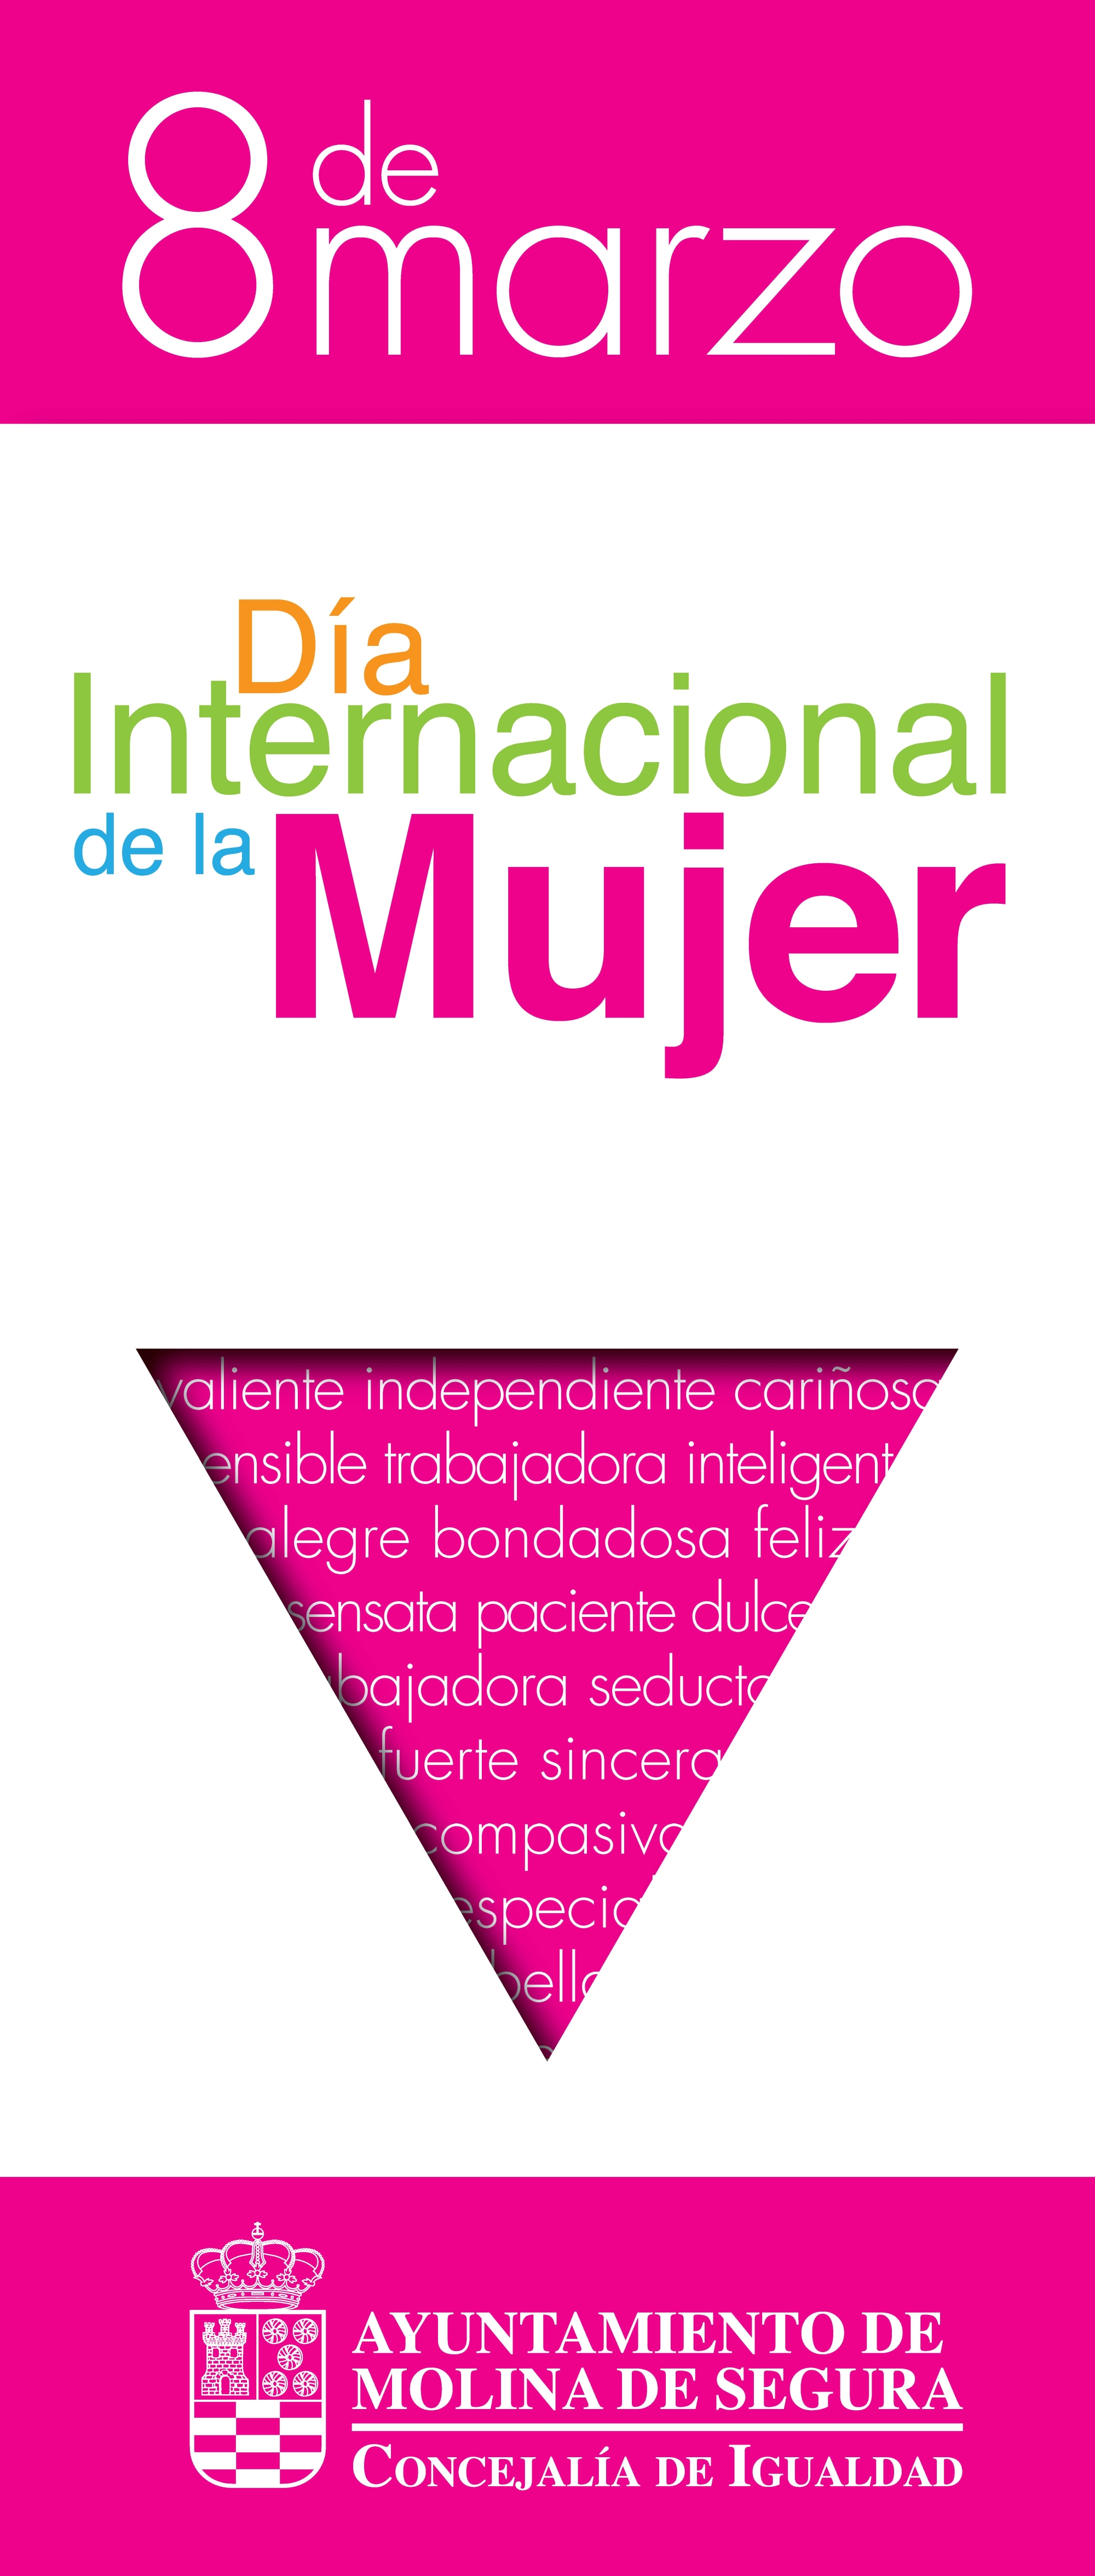 Igualdad-Molina-Programa actividades 8 de Marzo 2020-CARTEL.jpg